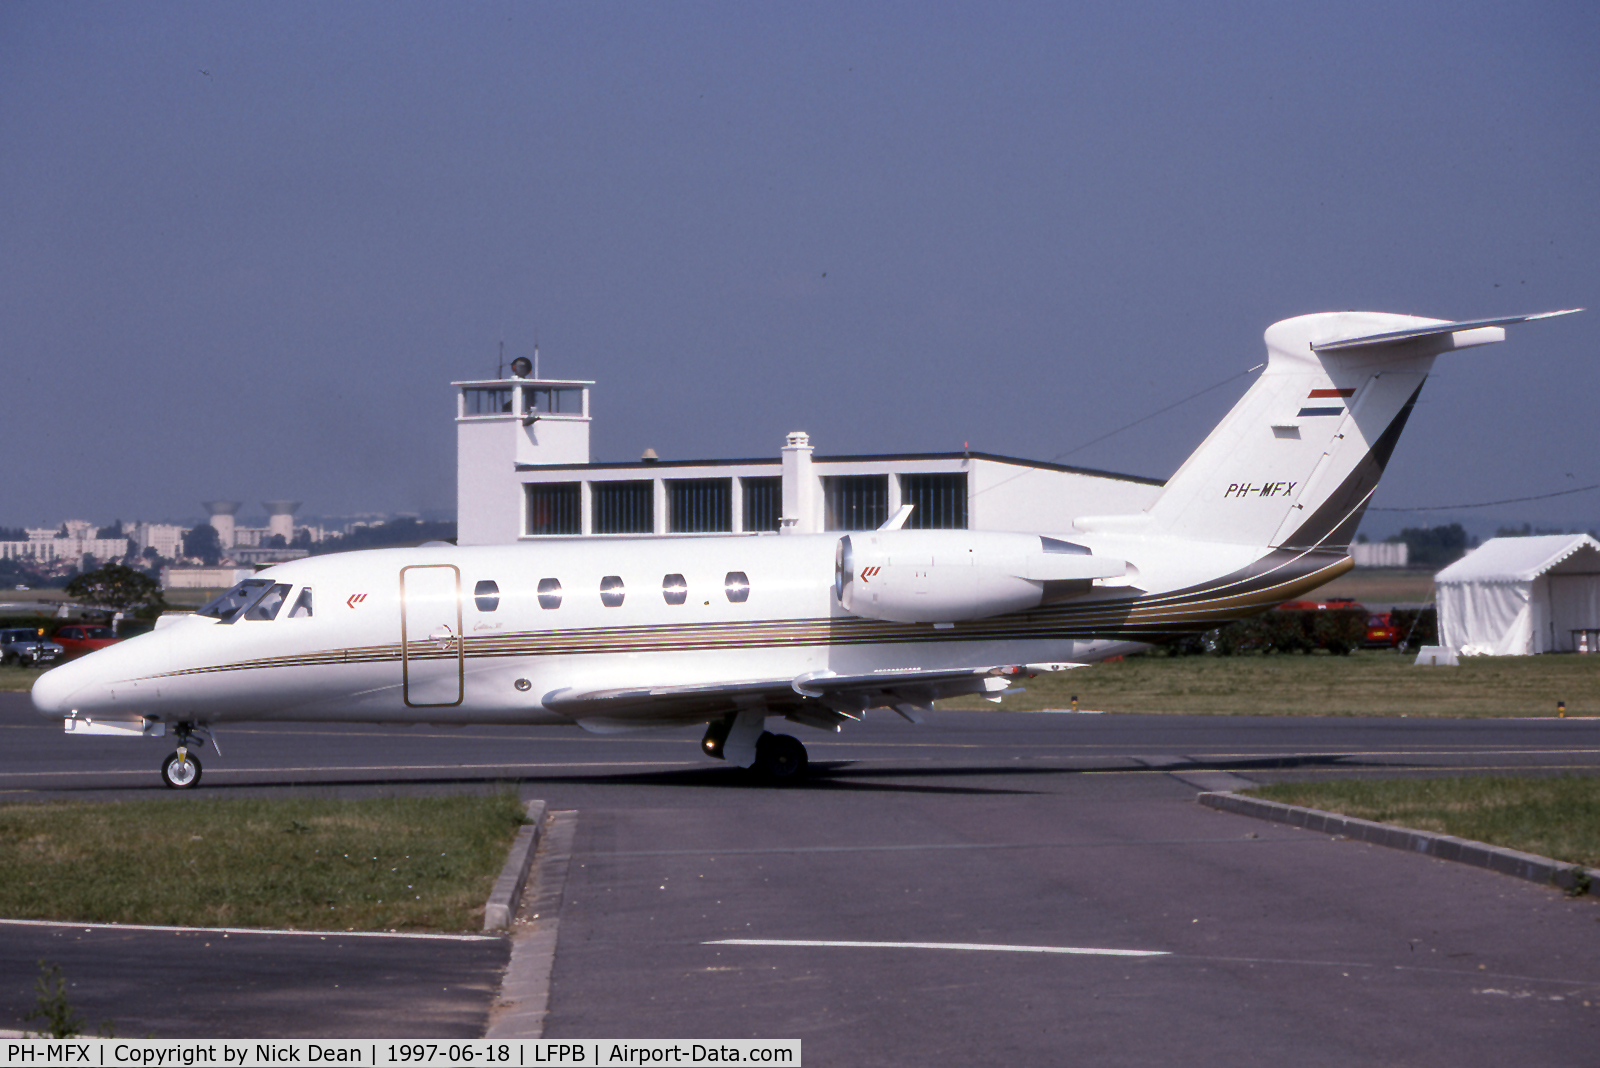 PH-MFX, 1994 Cessna 650 Citation VI C/N 650-0240, LFPB Paris Le Bourget